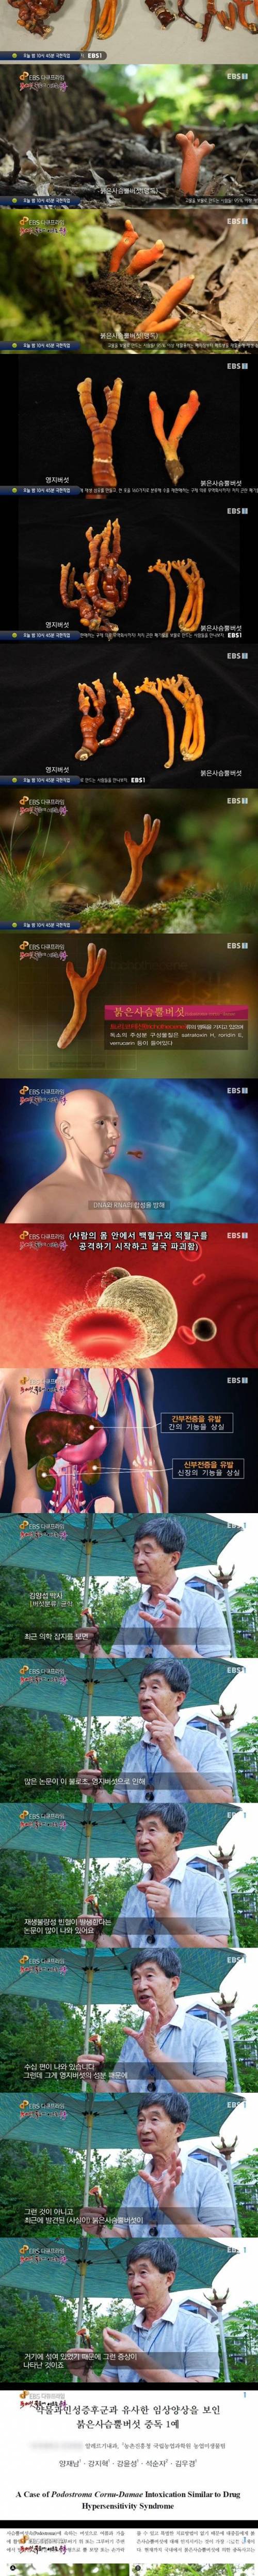 [스압] 한국에 서식하는 가장 위험한 독버섯.jpg